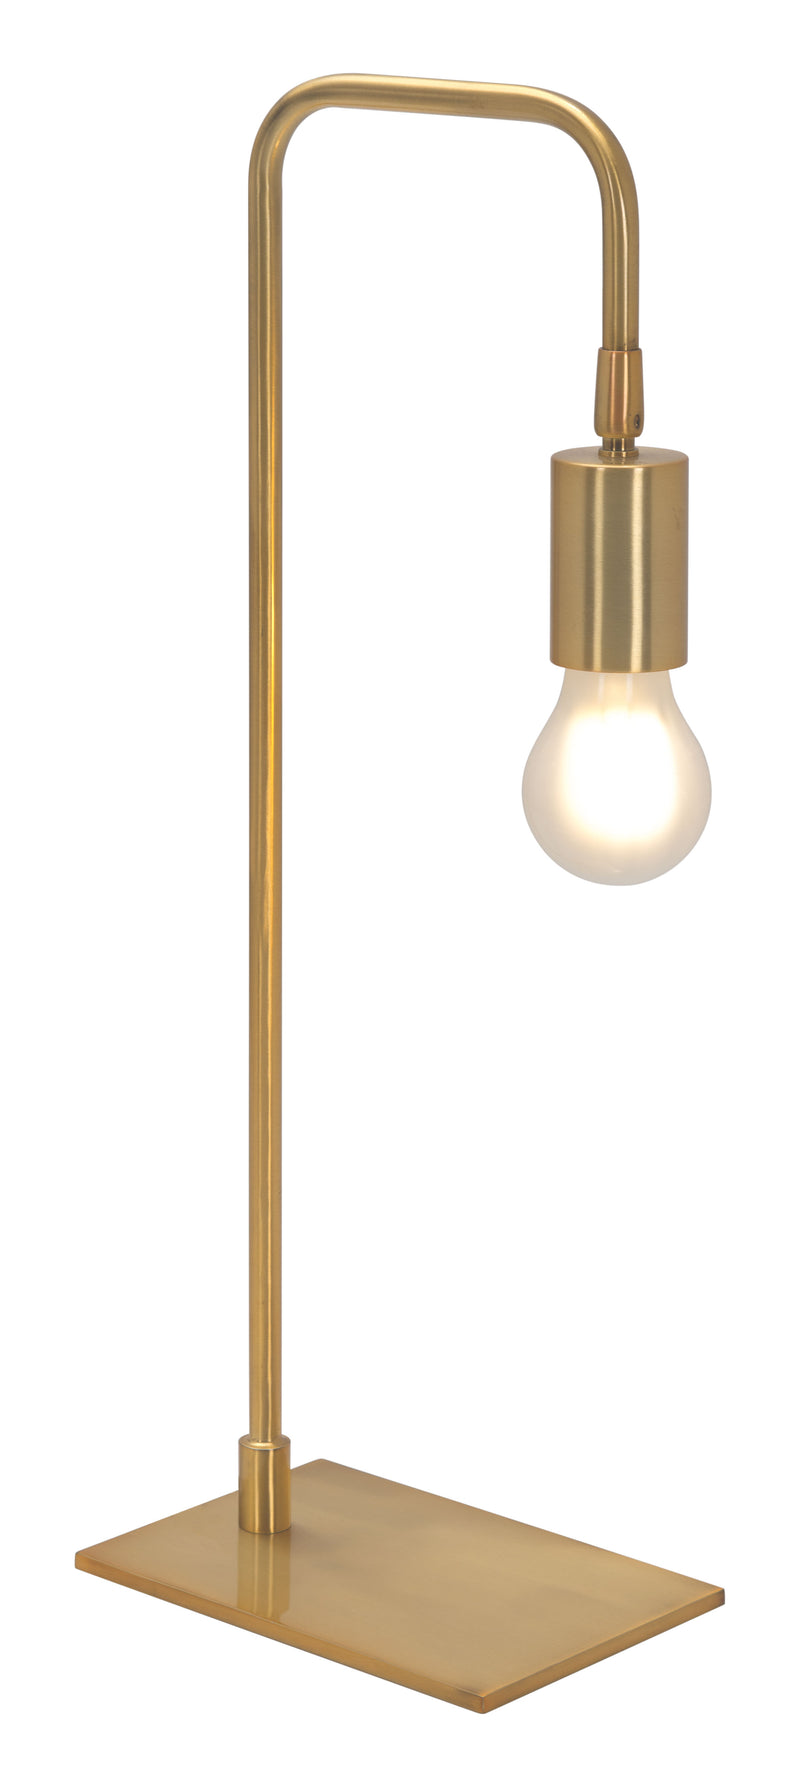 Martia Table Lamp